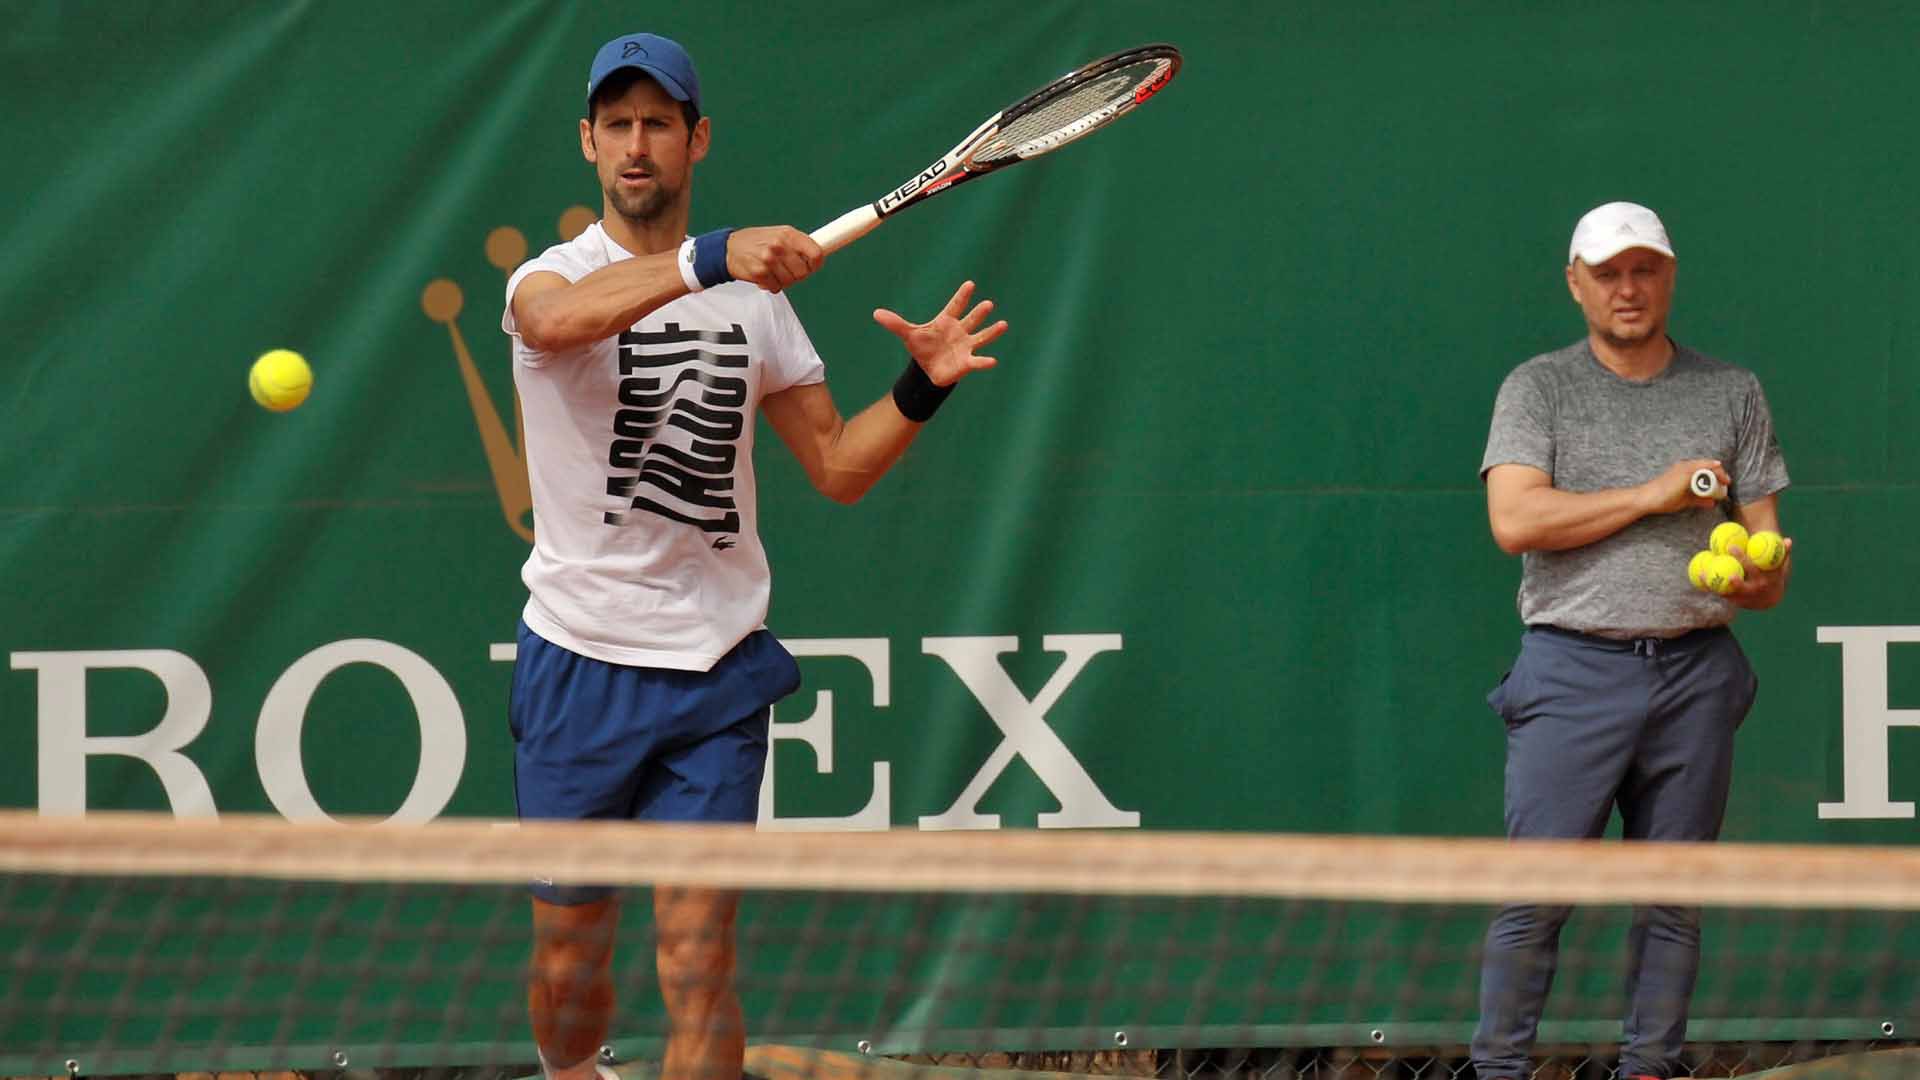 HÌNH ẢNH: HLV Vajda đã trở lại, nhưng ''phép màu'' chưa đến với Djokovic